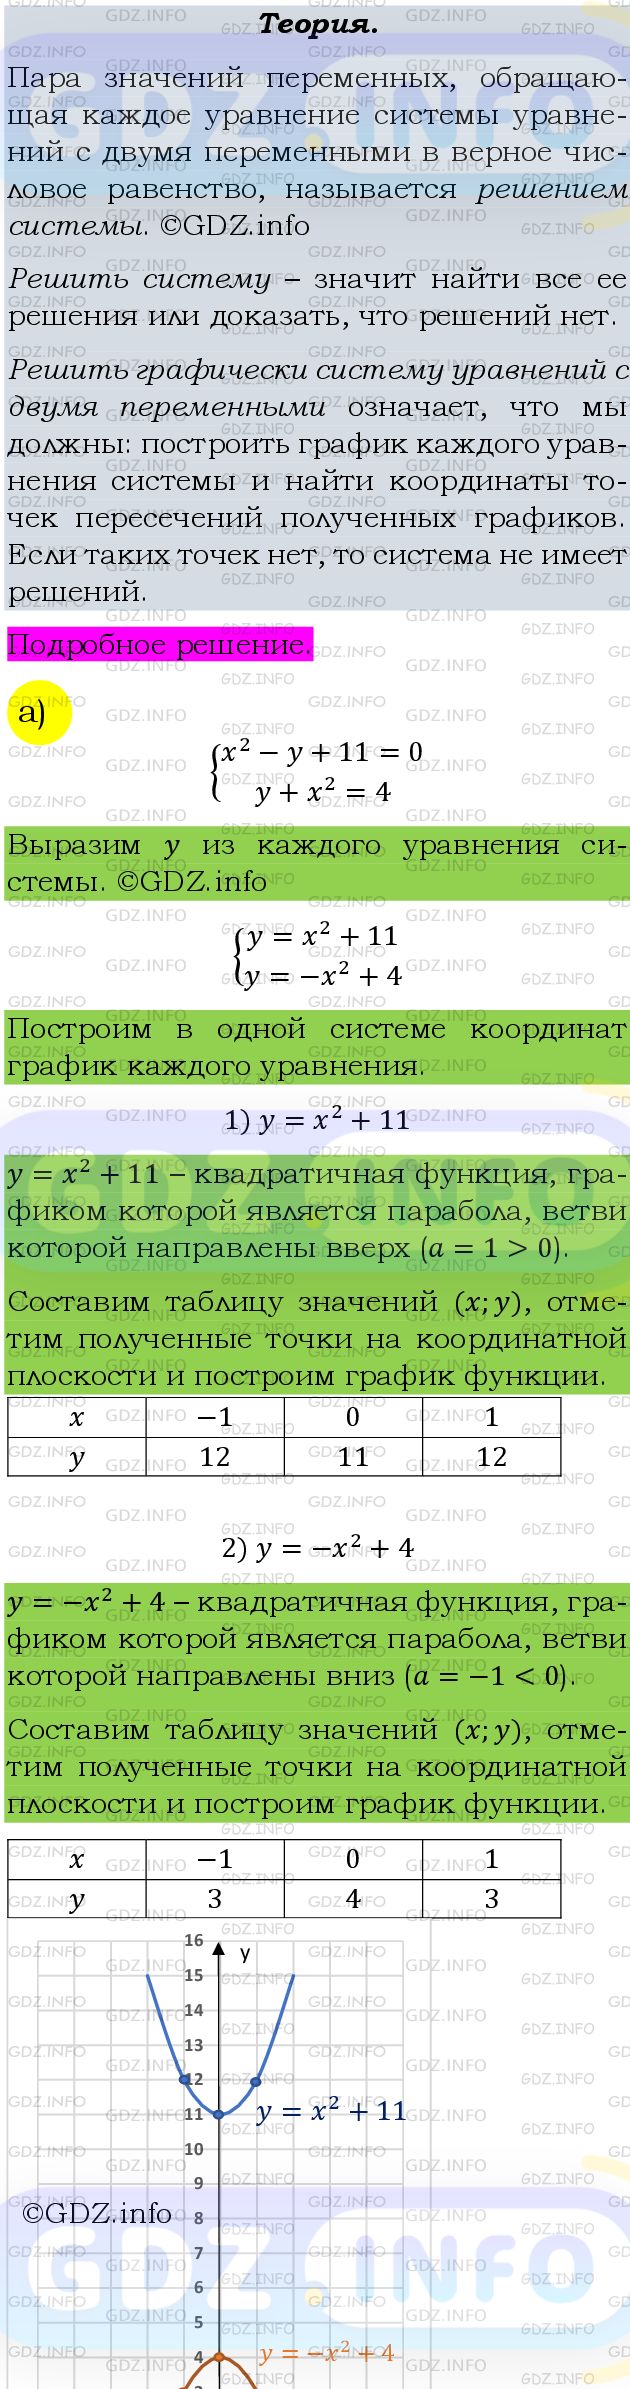 Фото подробного решения: Номер задания №489 из ГДЗ по Алгебре 9 класс: Макарычев Ю.Н.